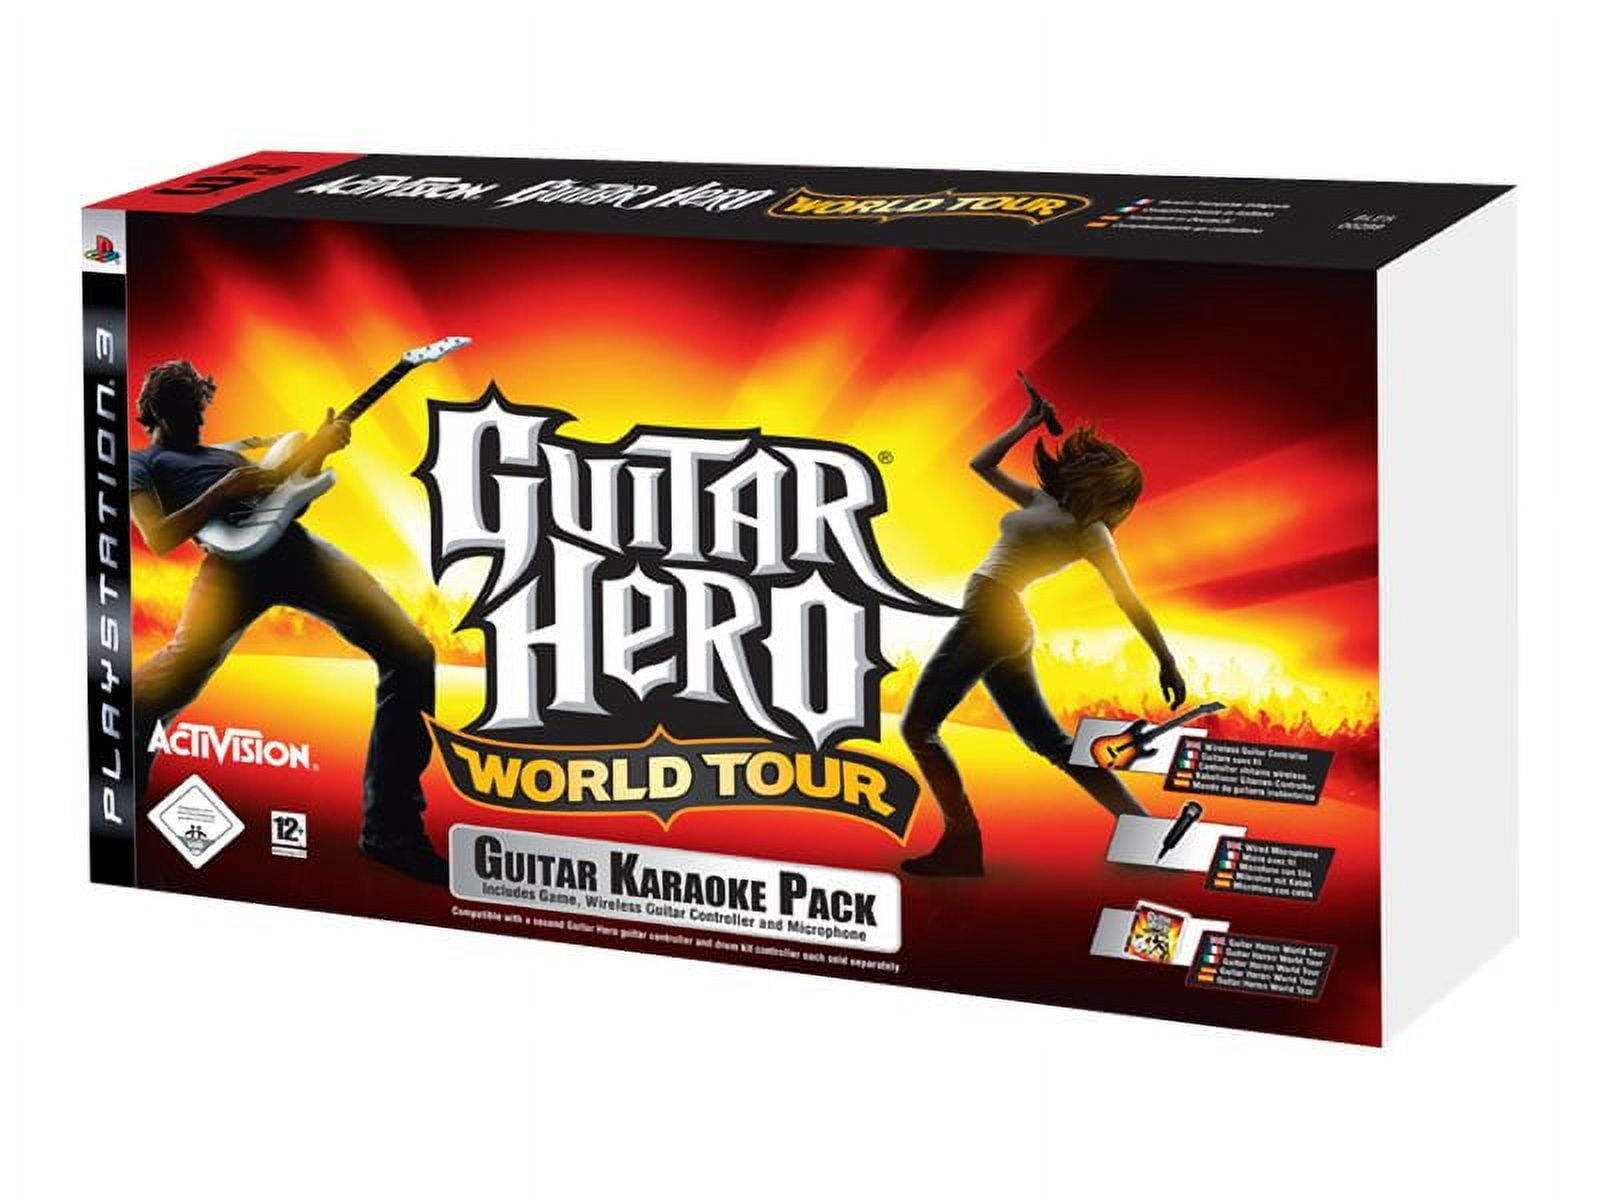 Juego de Batería PS3 Guitar Hero WORLD TOUR Dongle y GuitarHero Pedal Palos  y Juego